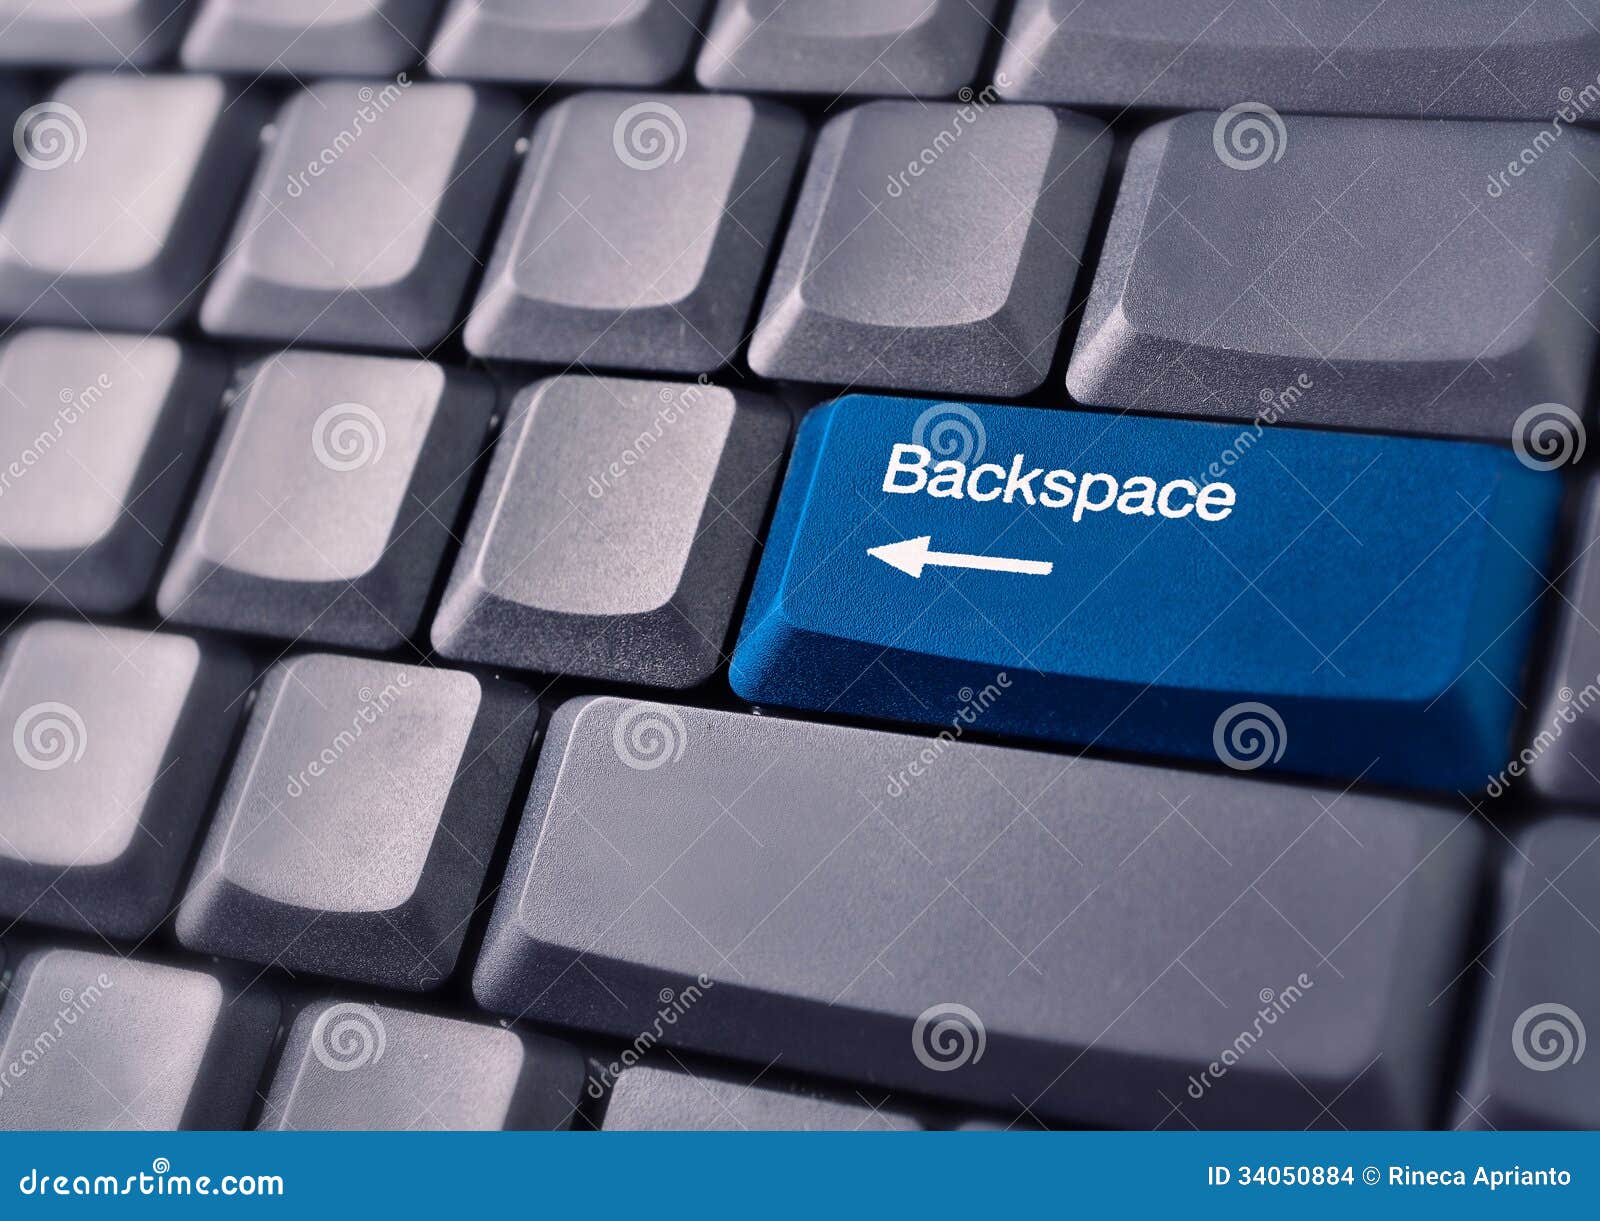 Backspace что делает. Что такое Backspace на клавиатуре компьютера. Кнопка Backspace на клавиатуре. Что такое бэкспейс на клавиатуре компьютера. Клавиша бекспейс на клавиатуре.